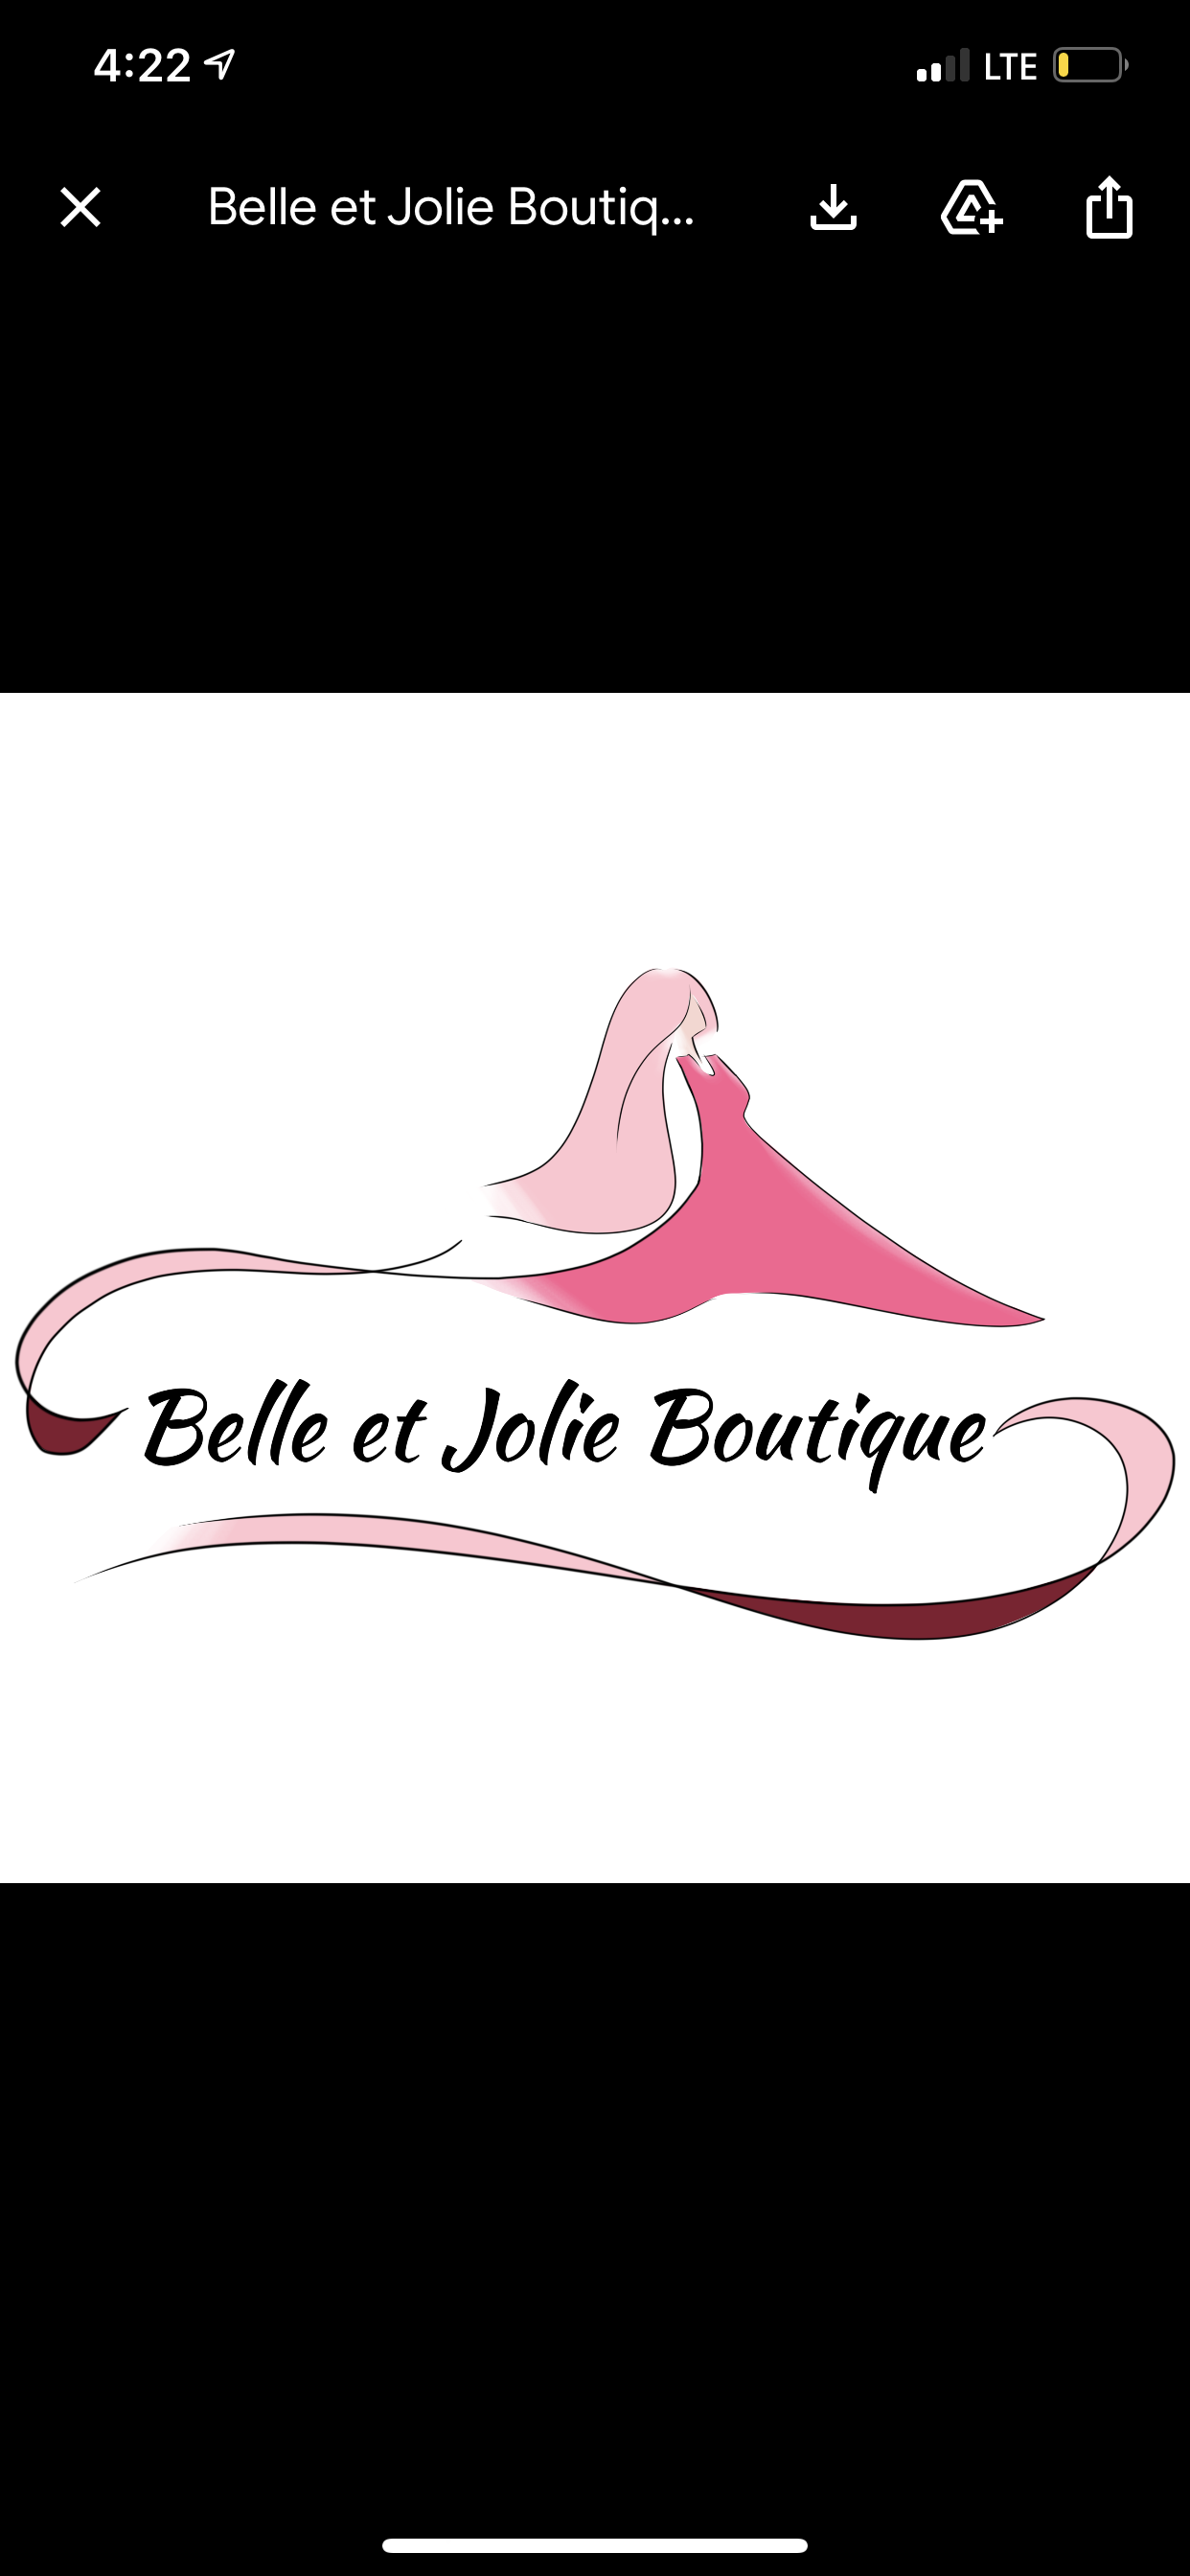 Belle et Jolie Boutique, LLC